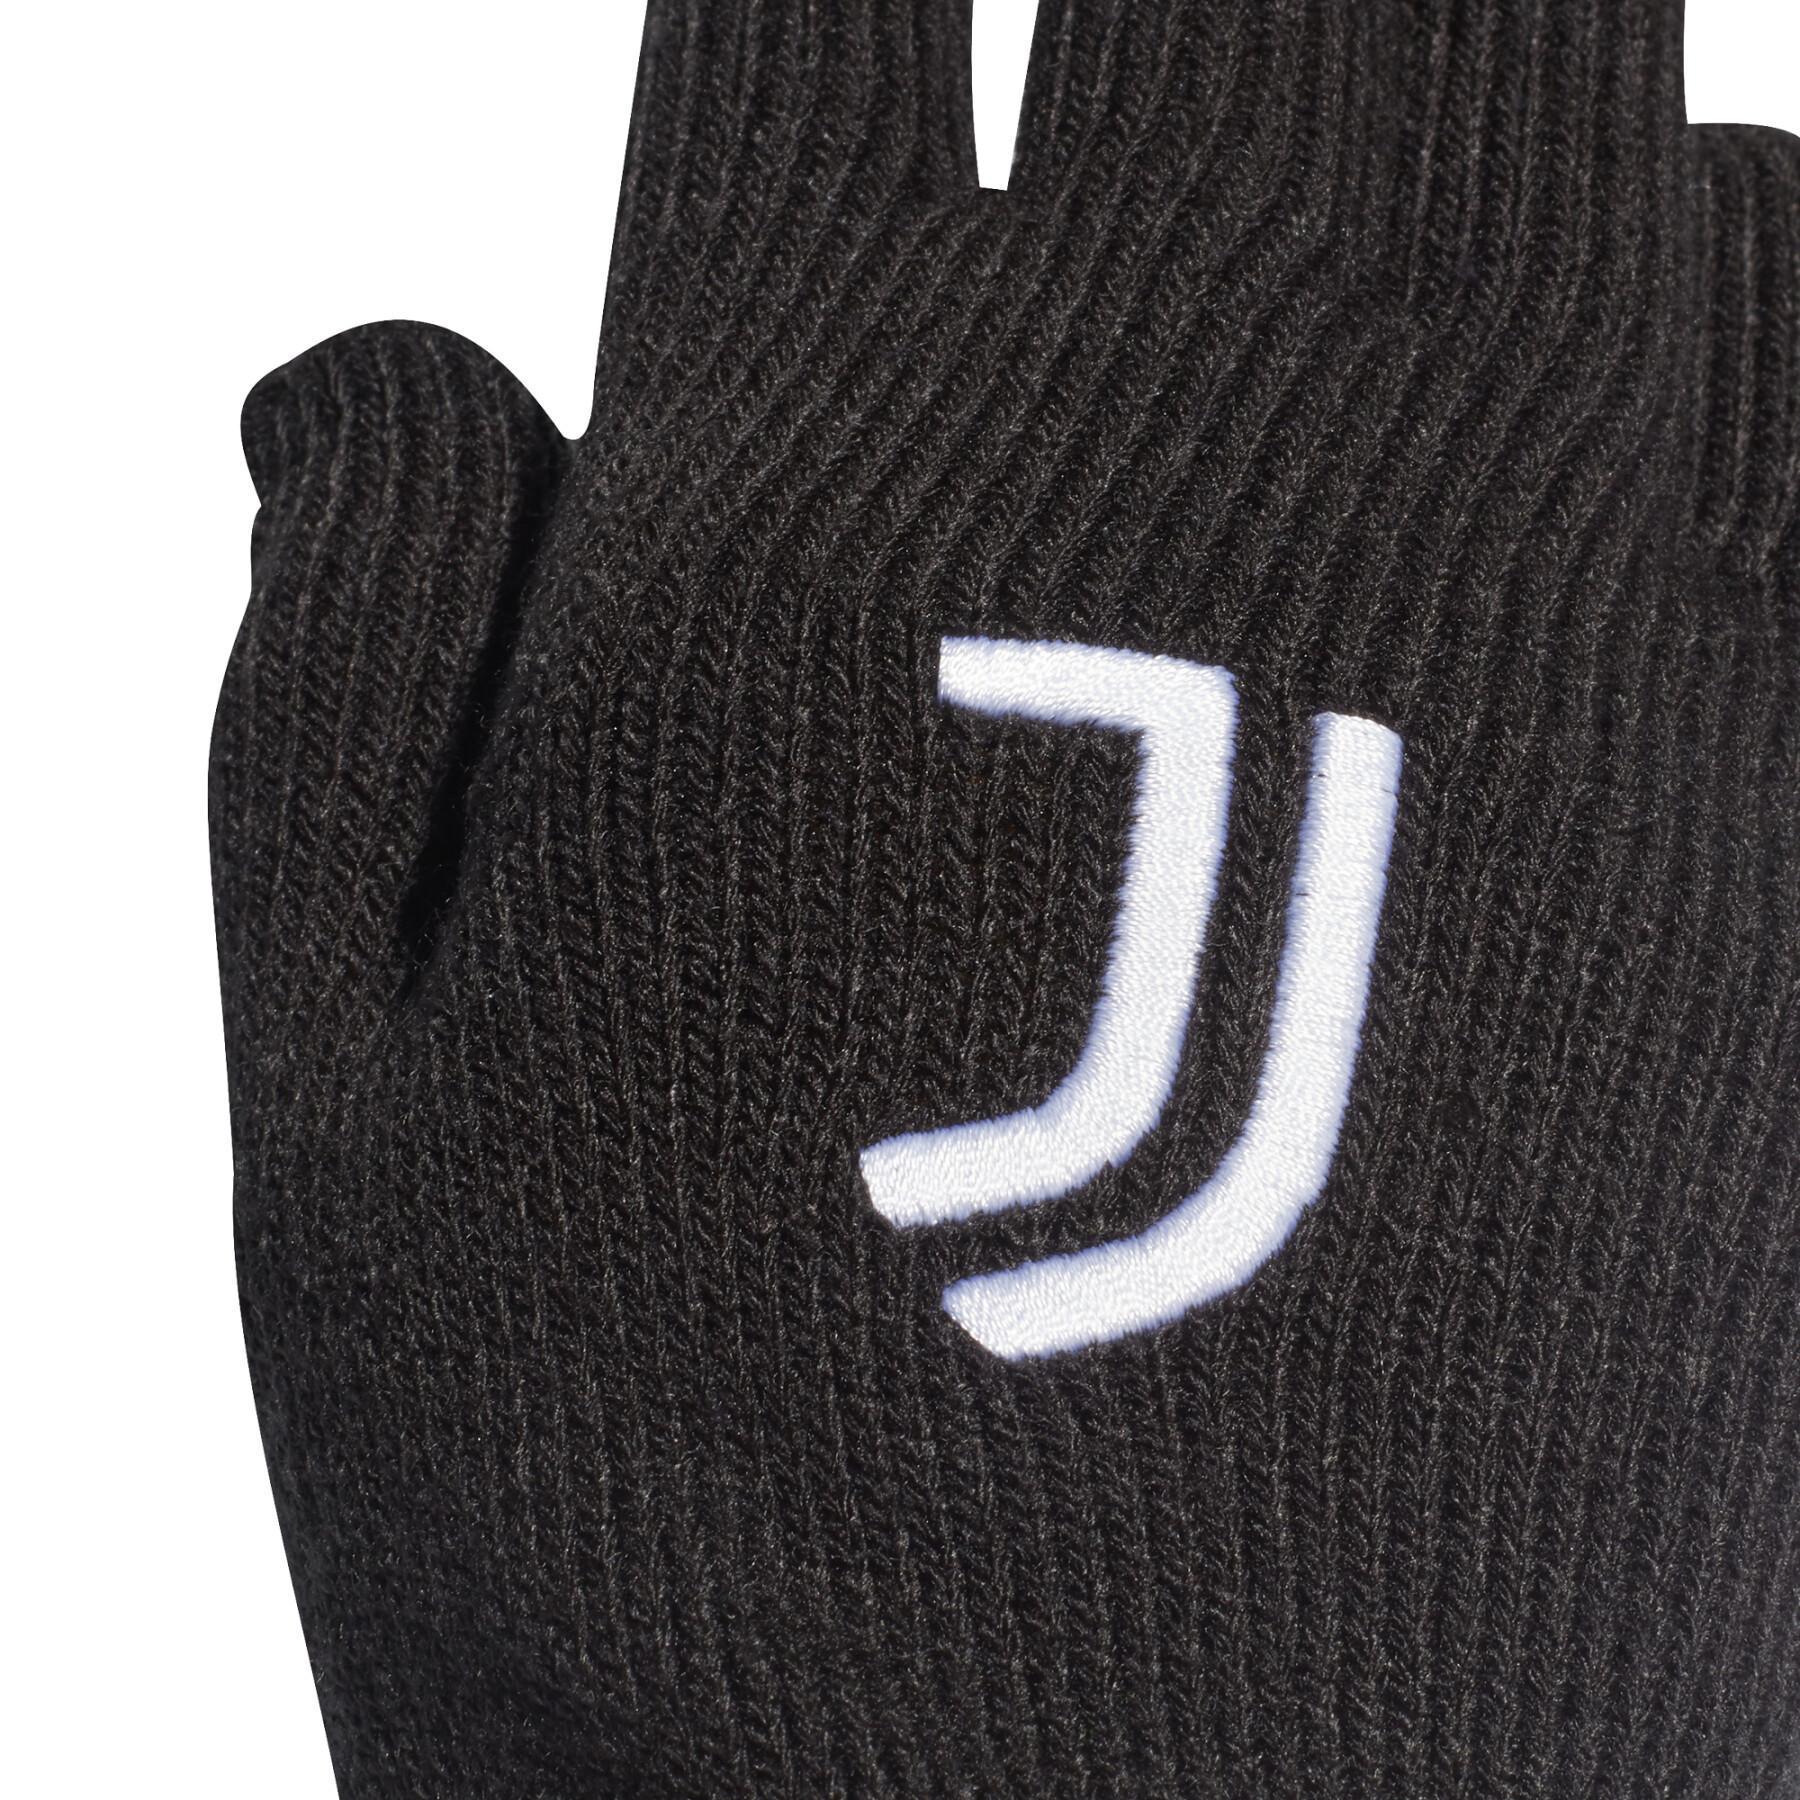 Rękawice Juventus